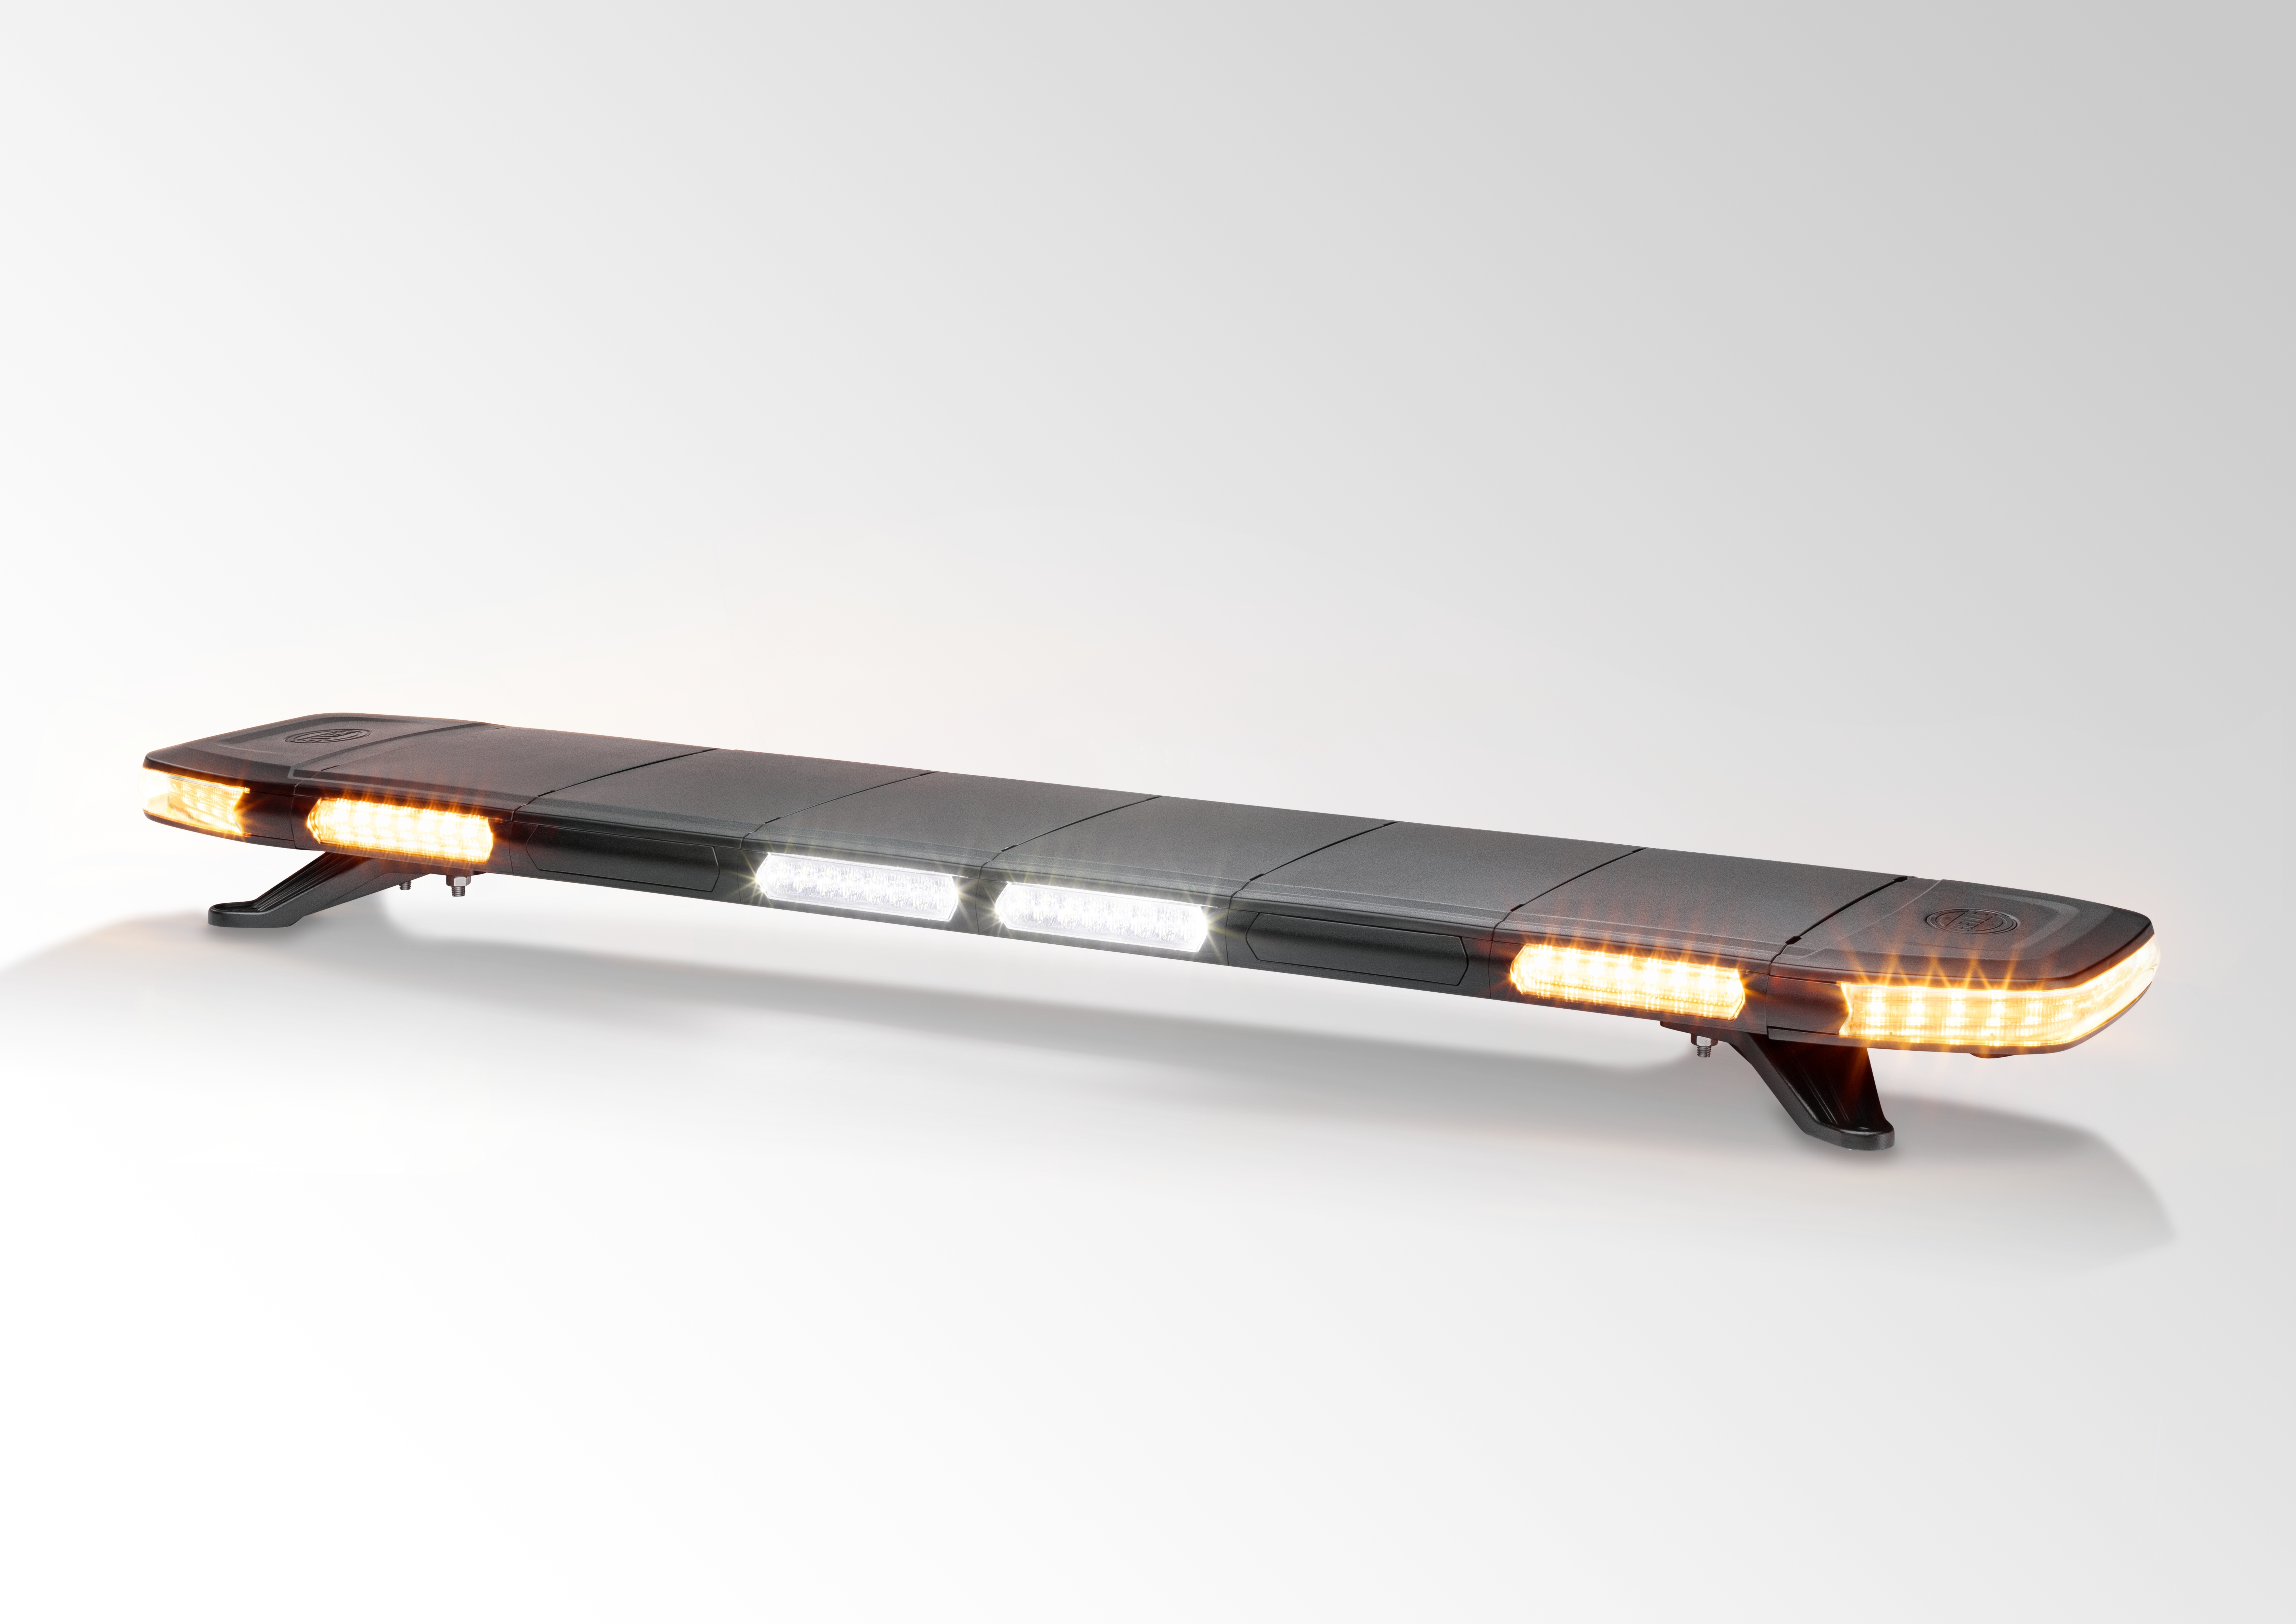 HELLA представляет новую модульную световую "люстру" для коммунальной техники